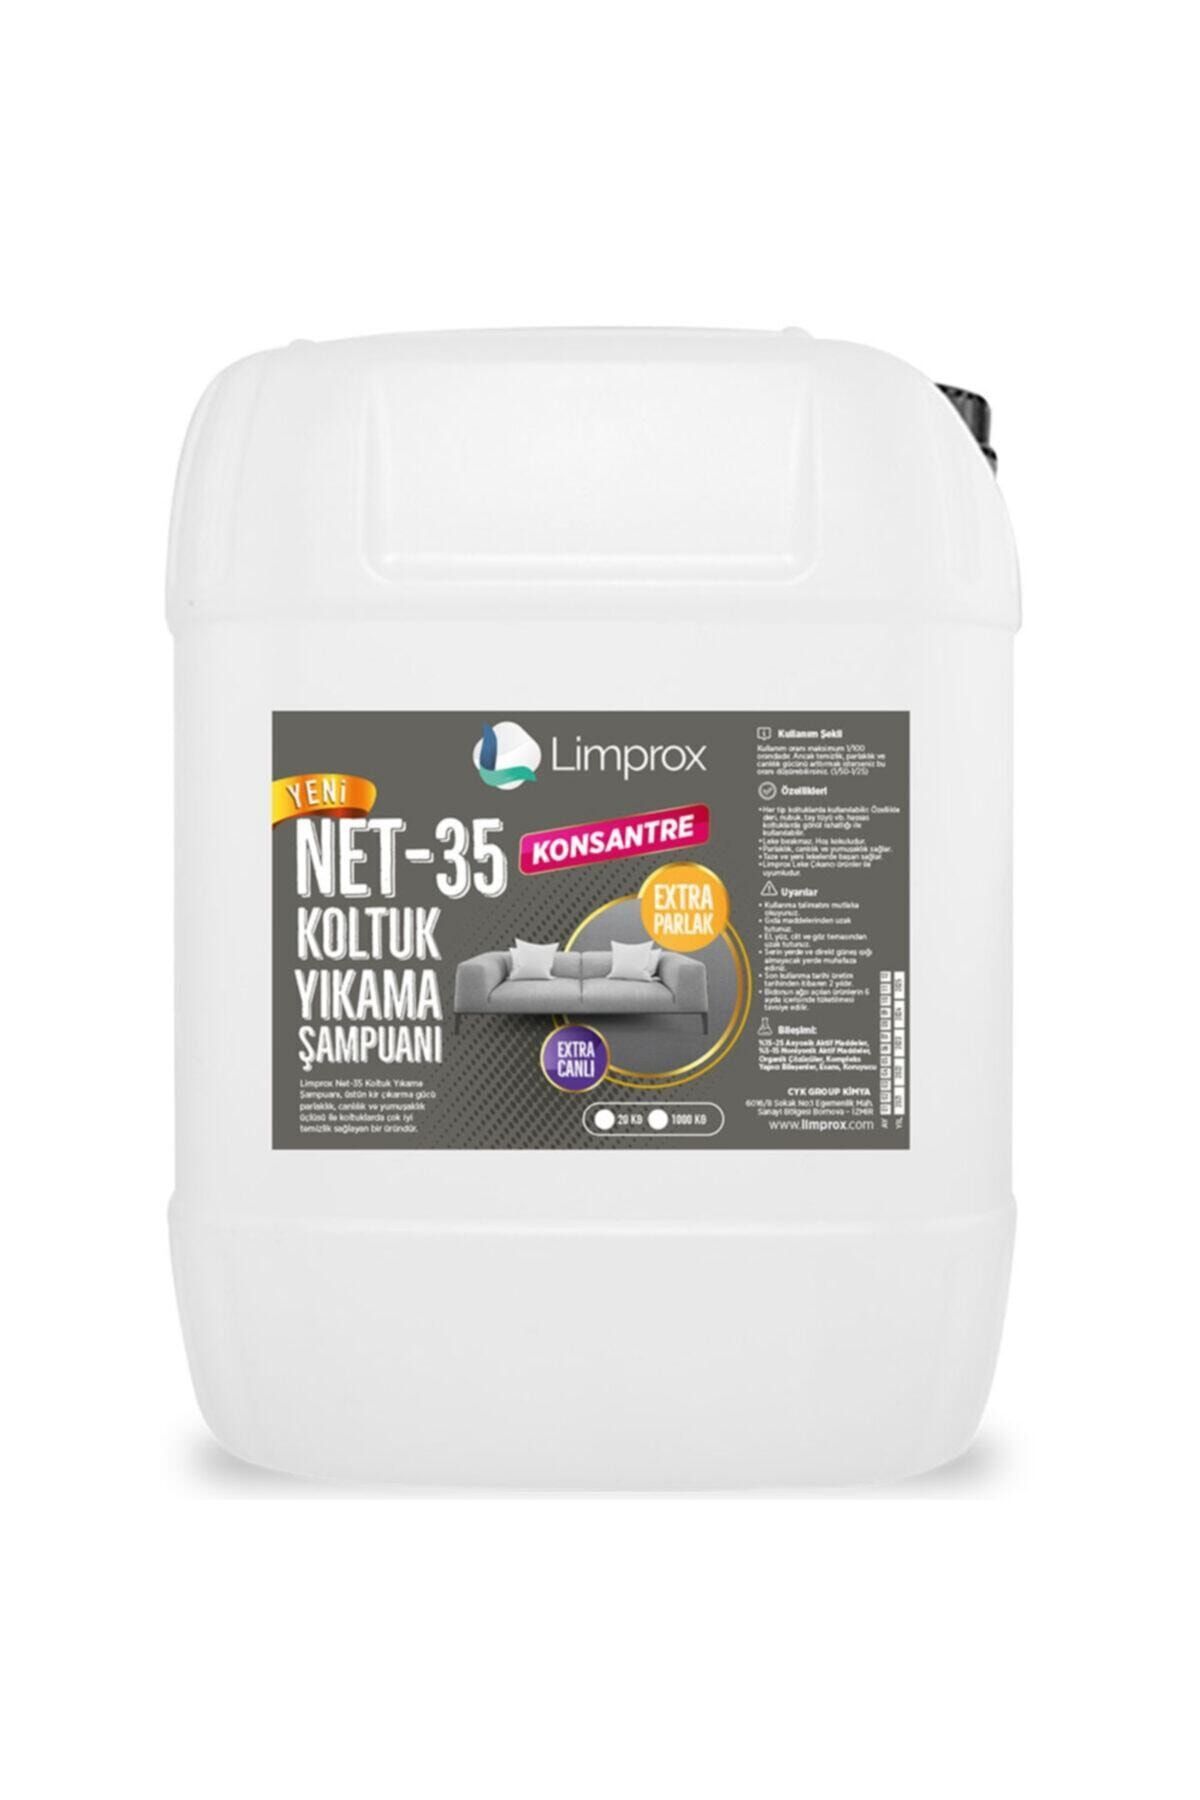 Limprox Net-35 Konsantre Koltuk Yıkama Şampuanı - 30 Kg